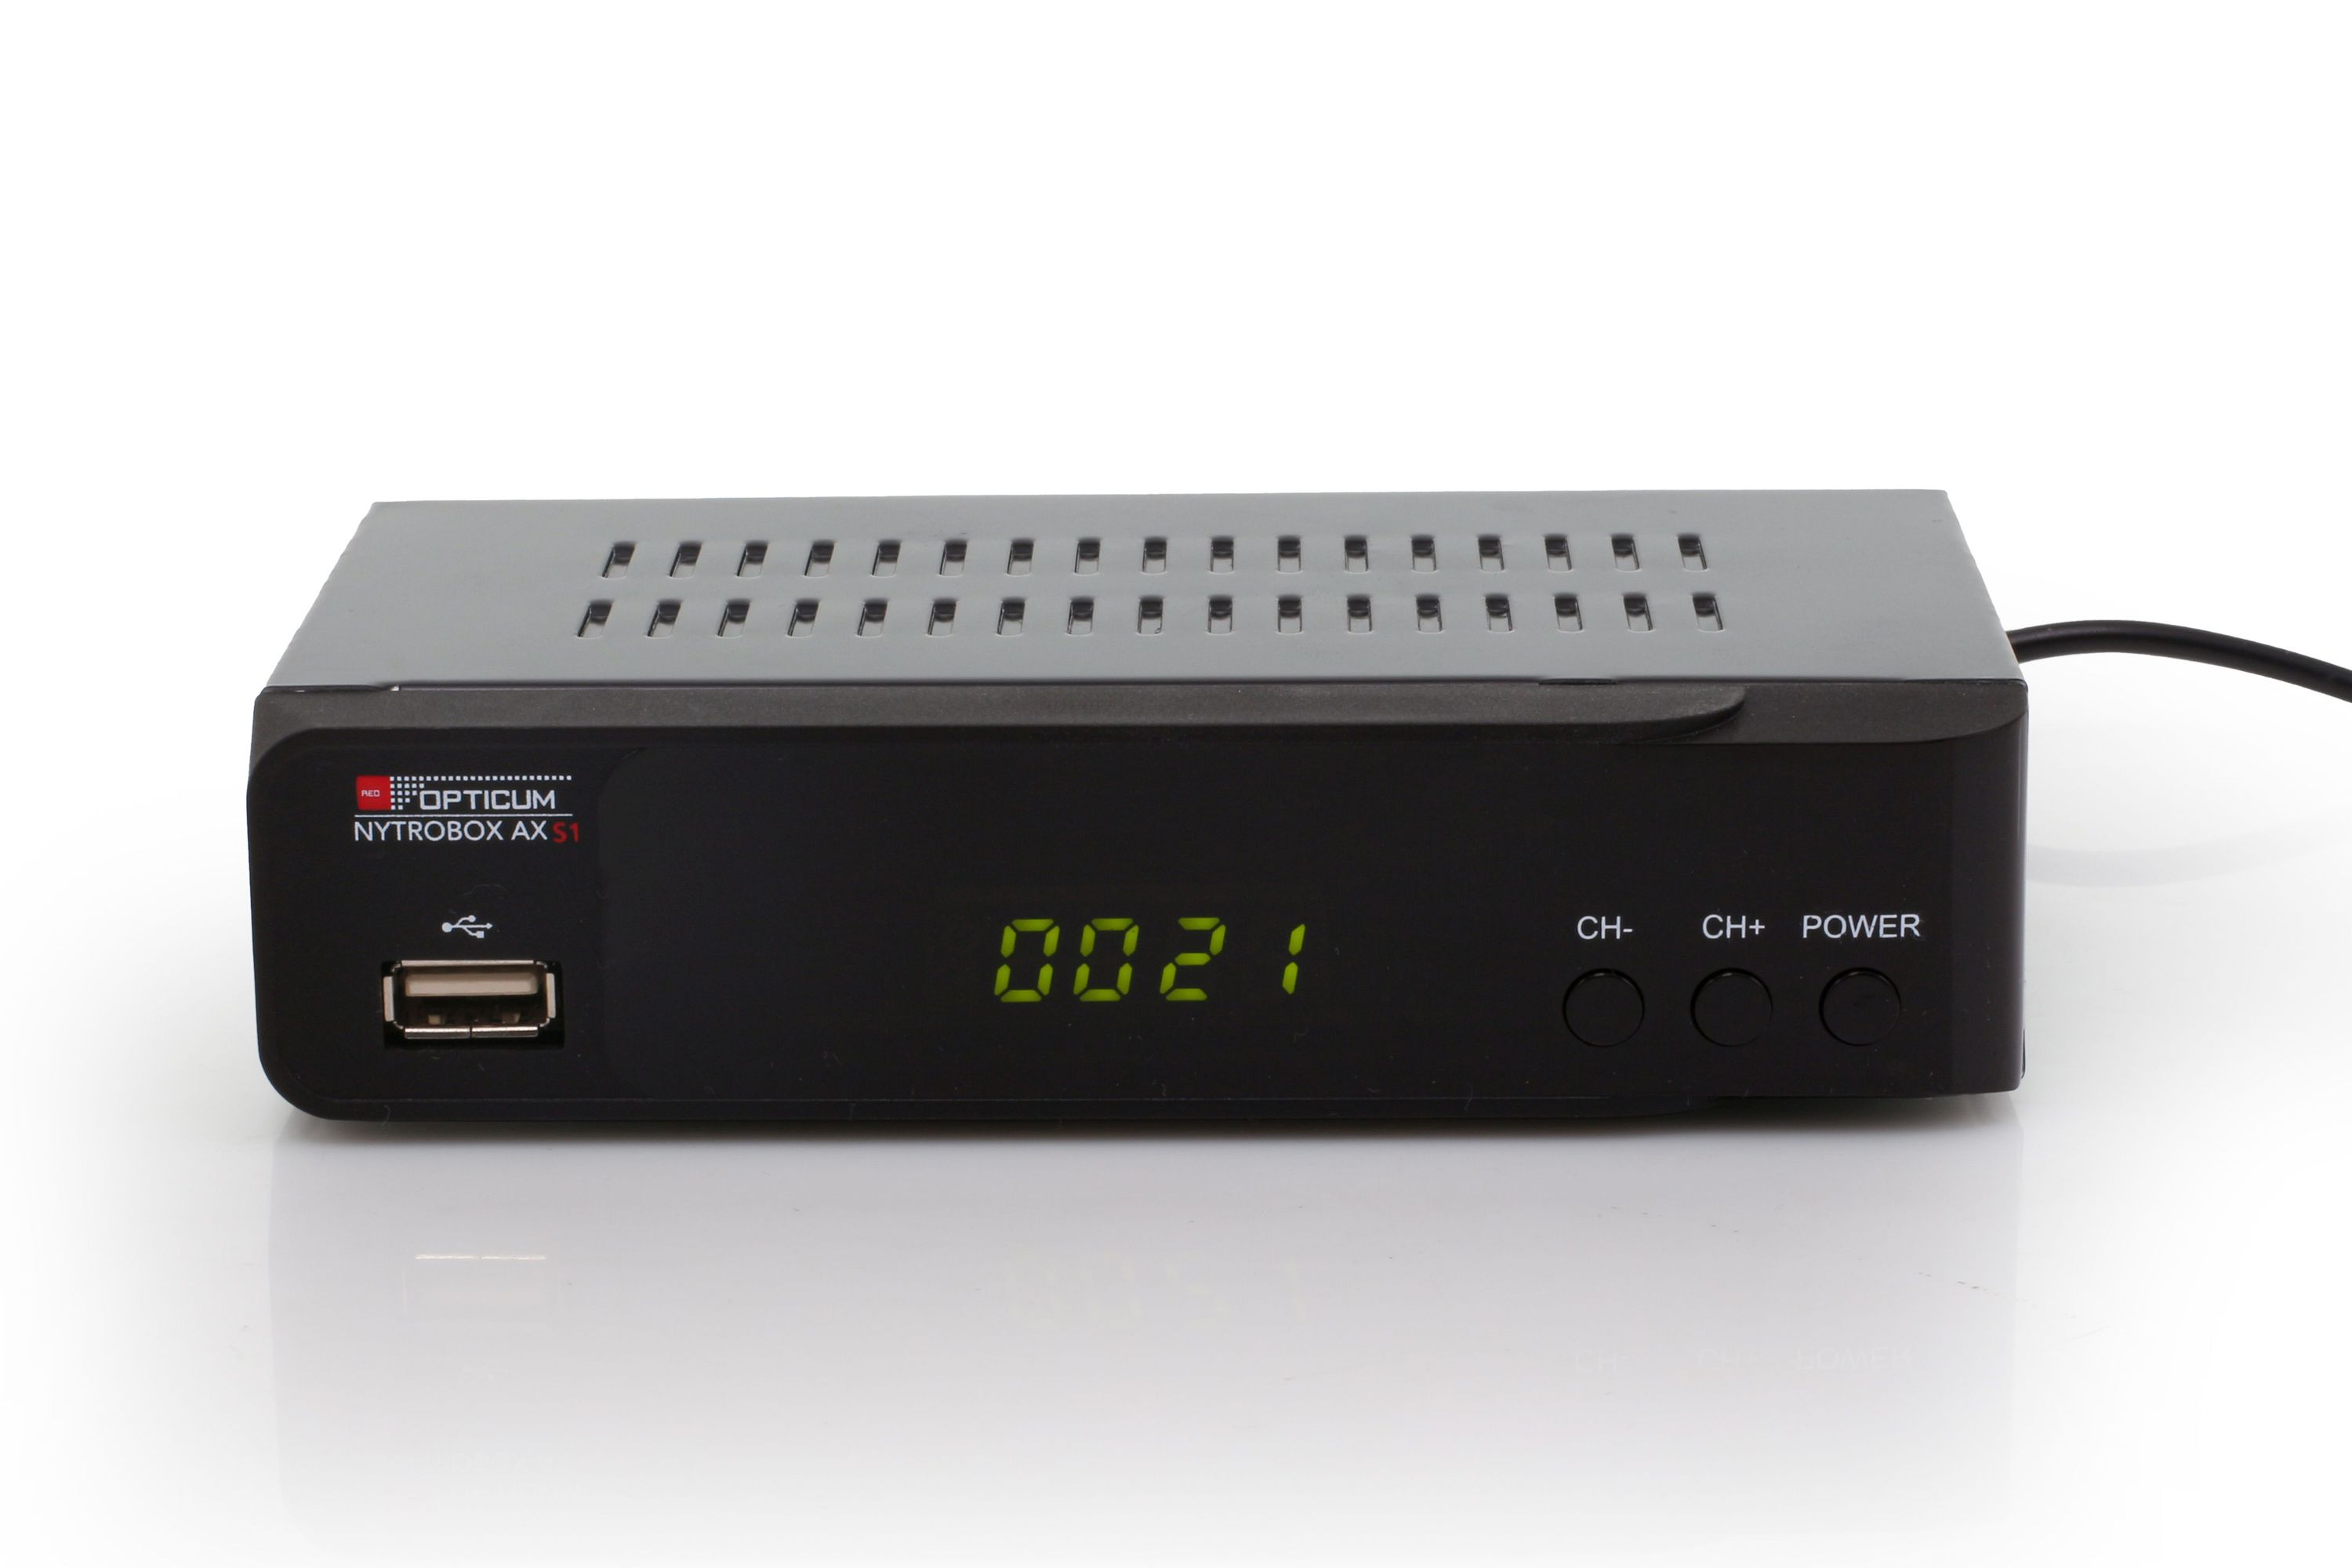 RED OPTICUM S1 schwarz) mit Receiver Receiver HD V Sat Satelliten-Receiver PVR-Funktion, Digitaler NYTROBOX AX DVB-S2 12 (HDTV, HD1080p-HDMI DVB-S, I DVB-S2, Aufnahmefunktion